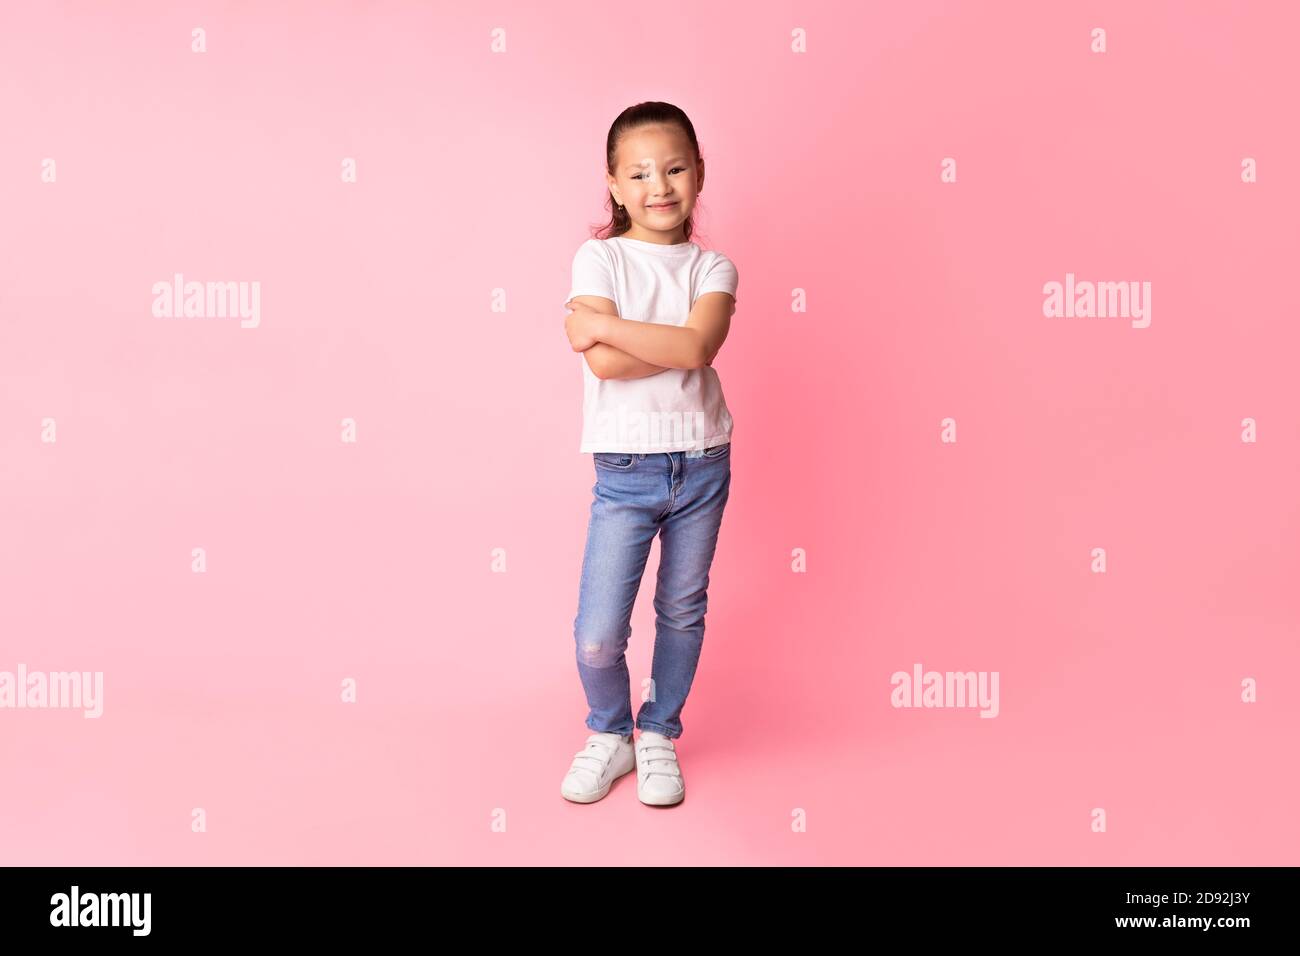 Smiling asian girl posing and looking at camera Stock Photo